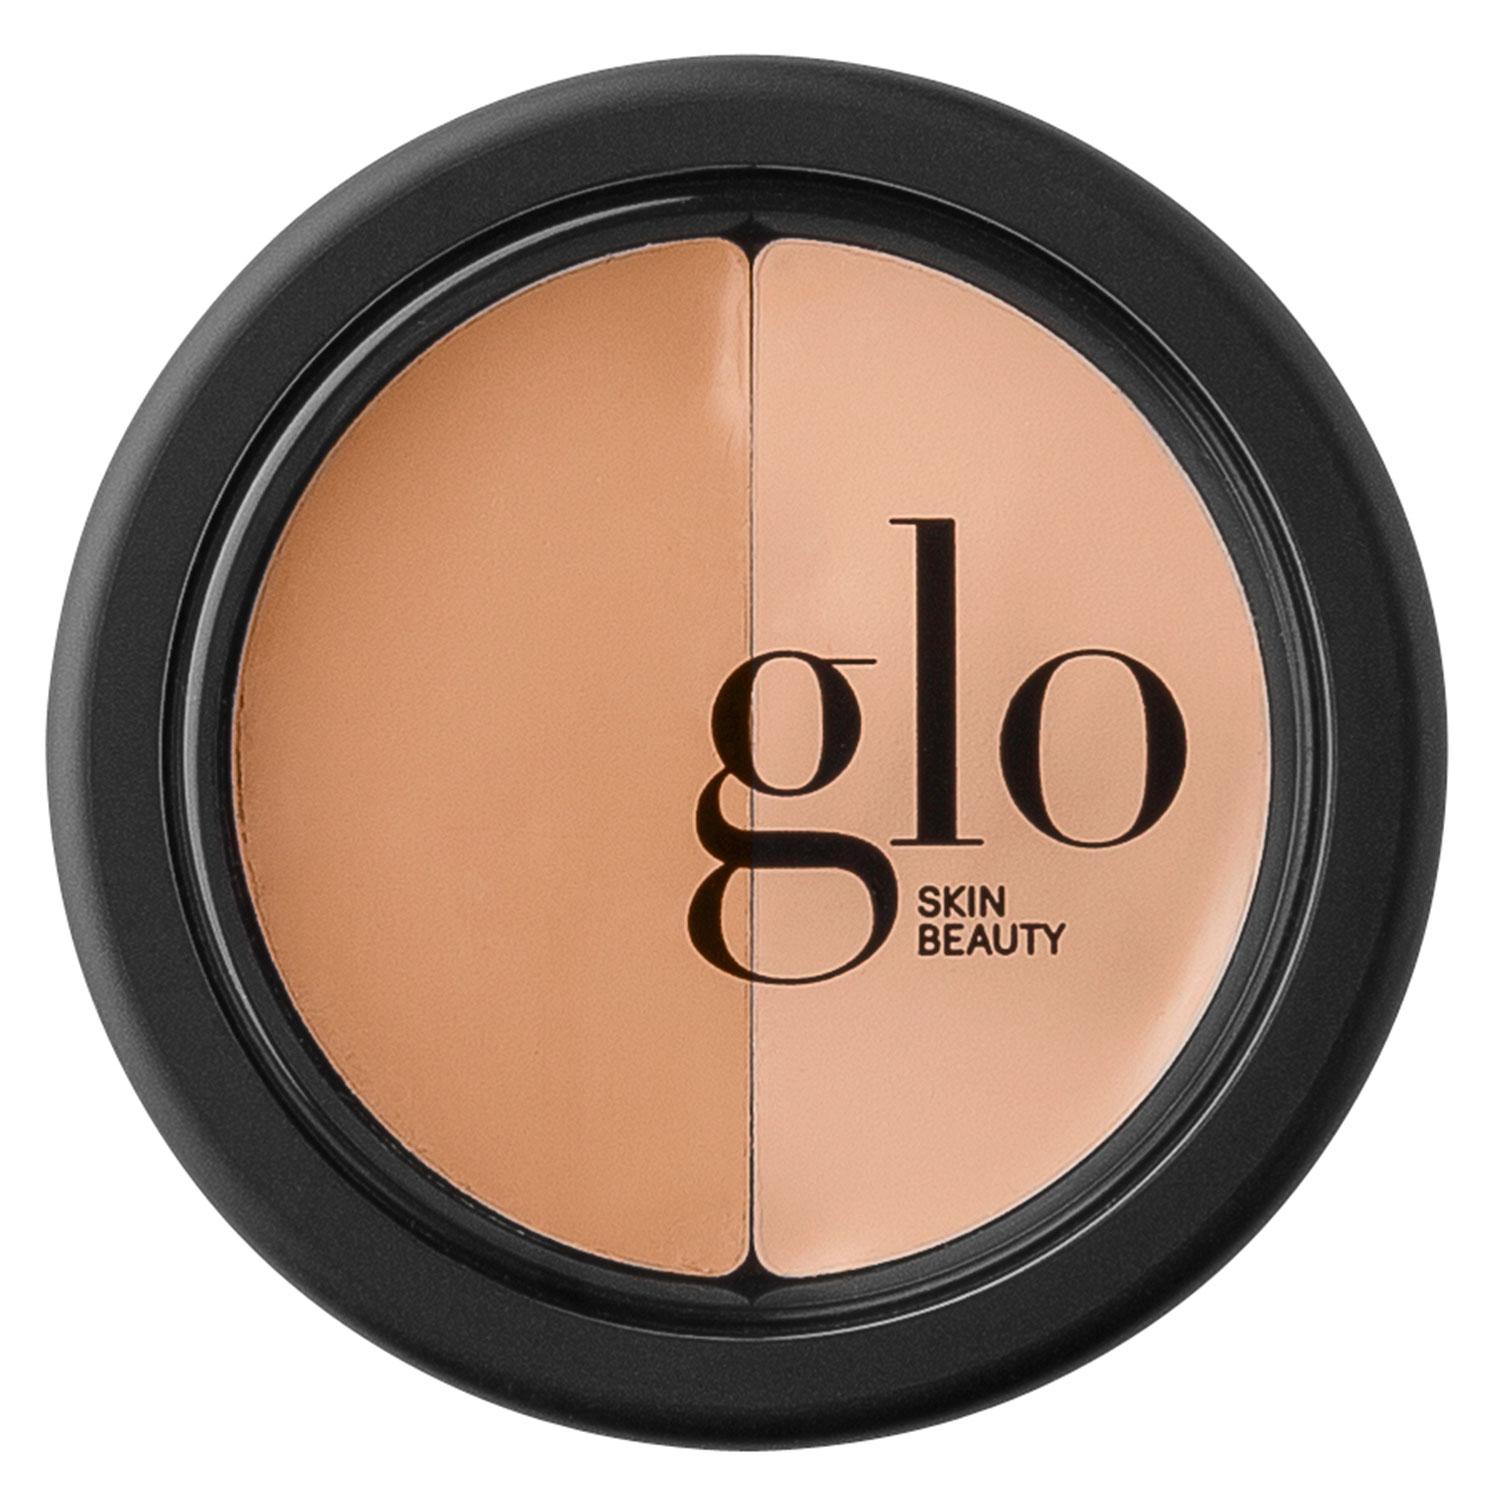 Glo Skin Beauty Concealer - Under Eye Concealer Natural